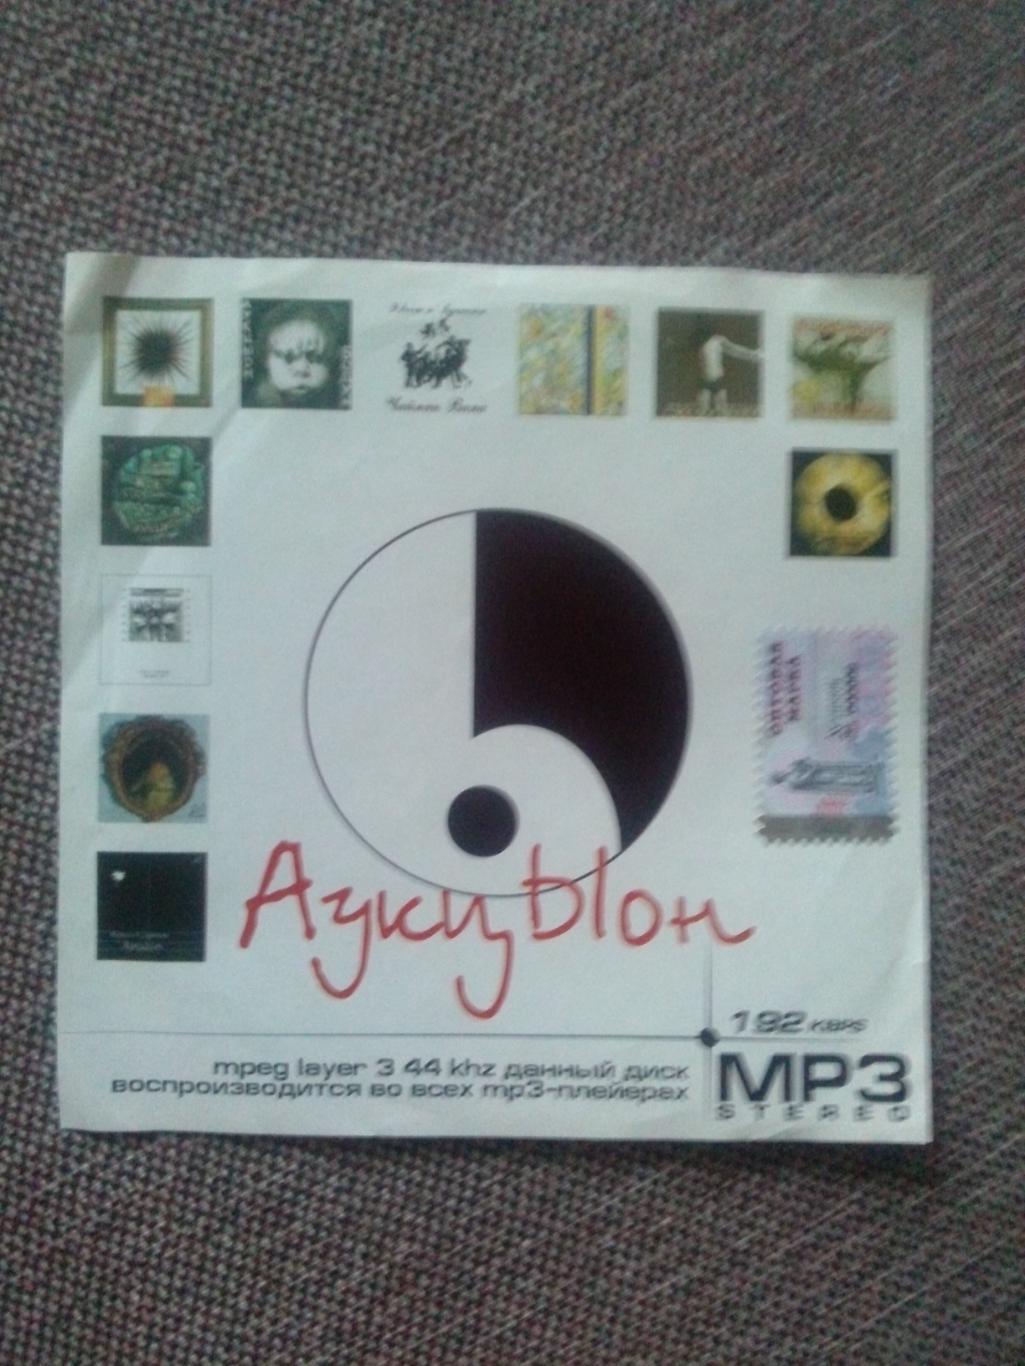 MP - 3 CD диск : группаАукцыон1986 - 2000 гг. 11 альбомов (Русский рок)